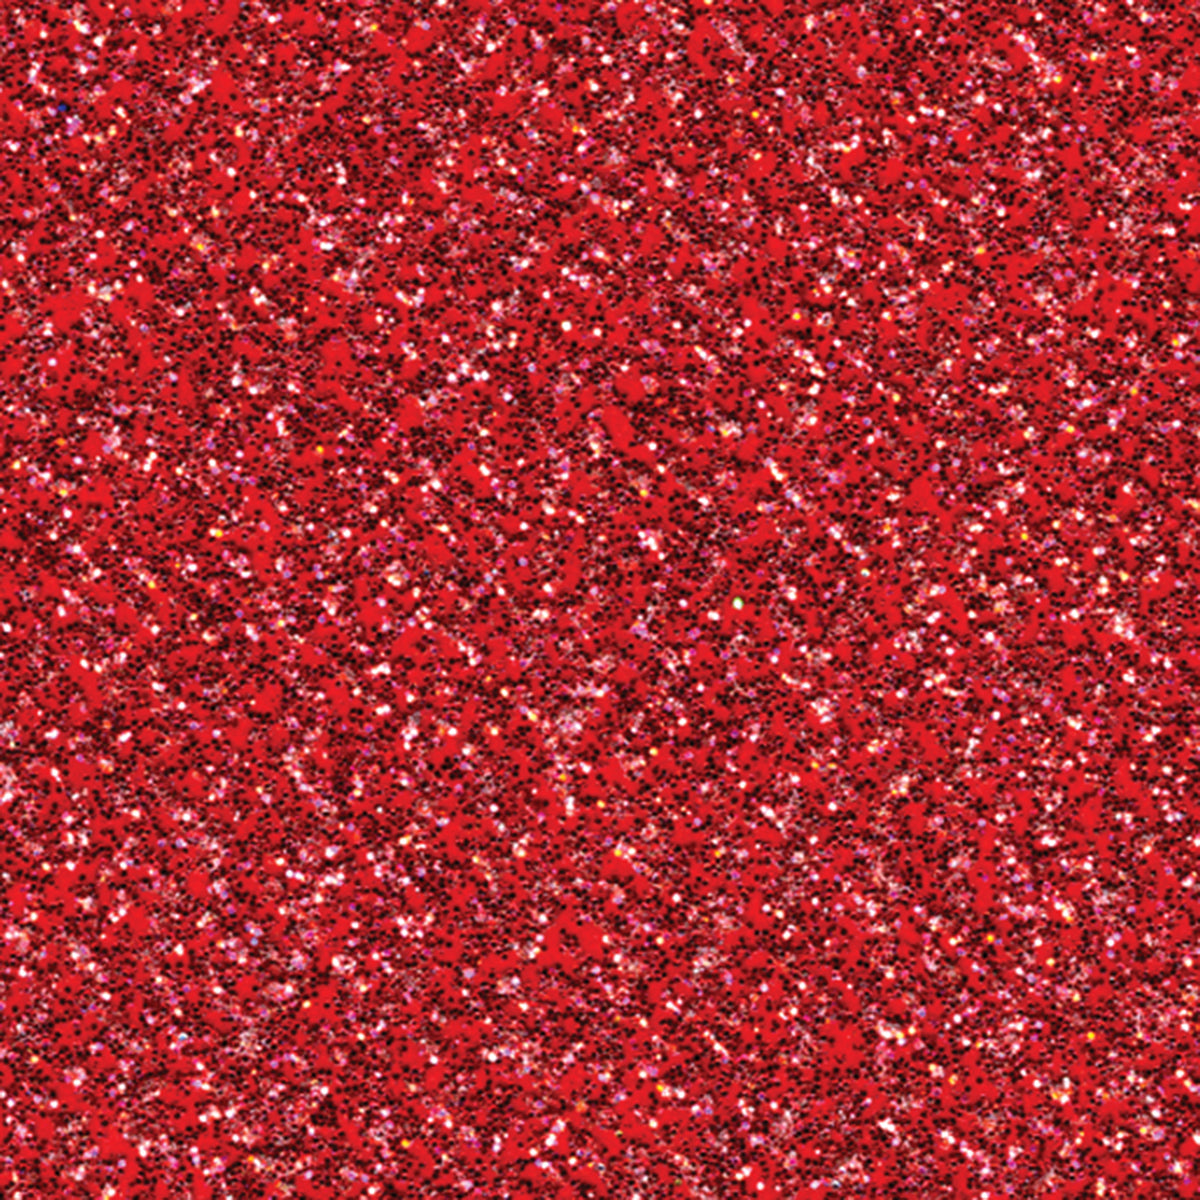 Rose Pink Glitter Cardstock 12x12 Glitter Cardstock Red Glitter